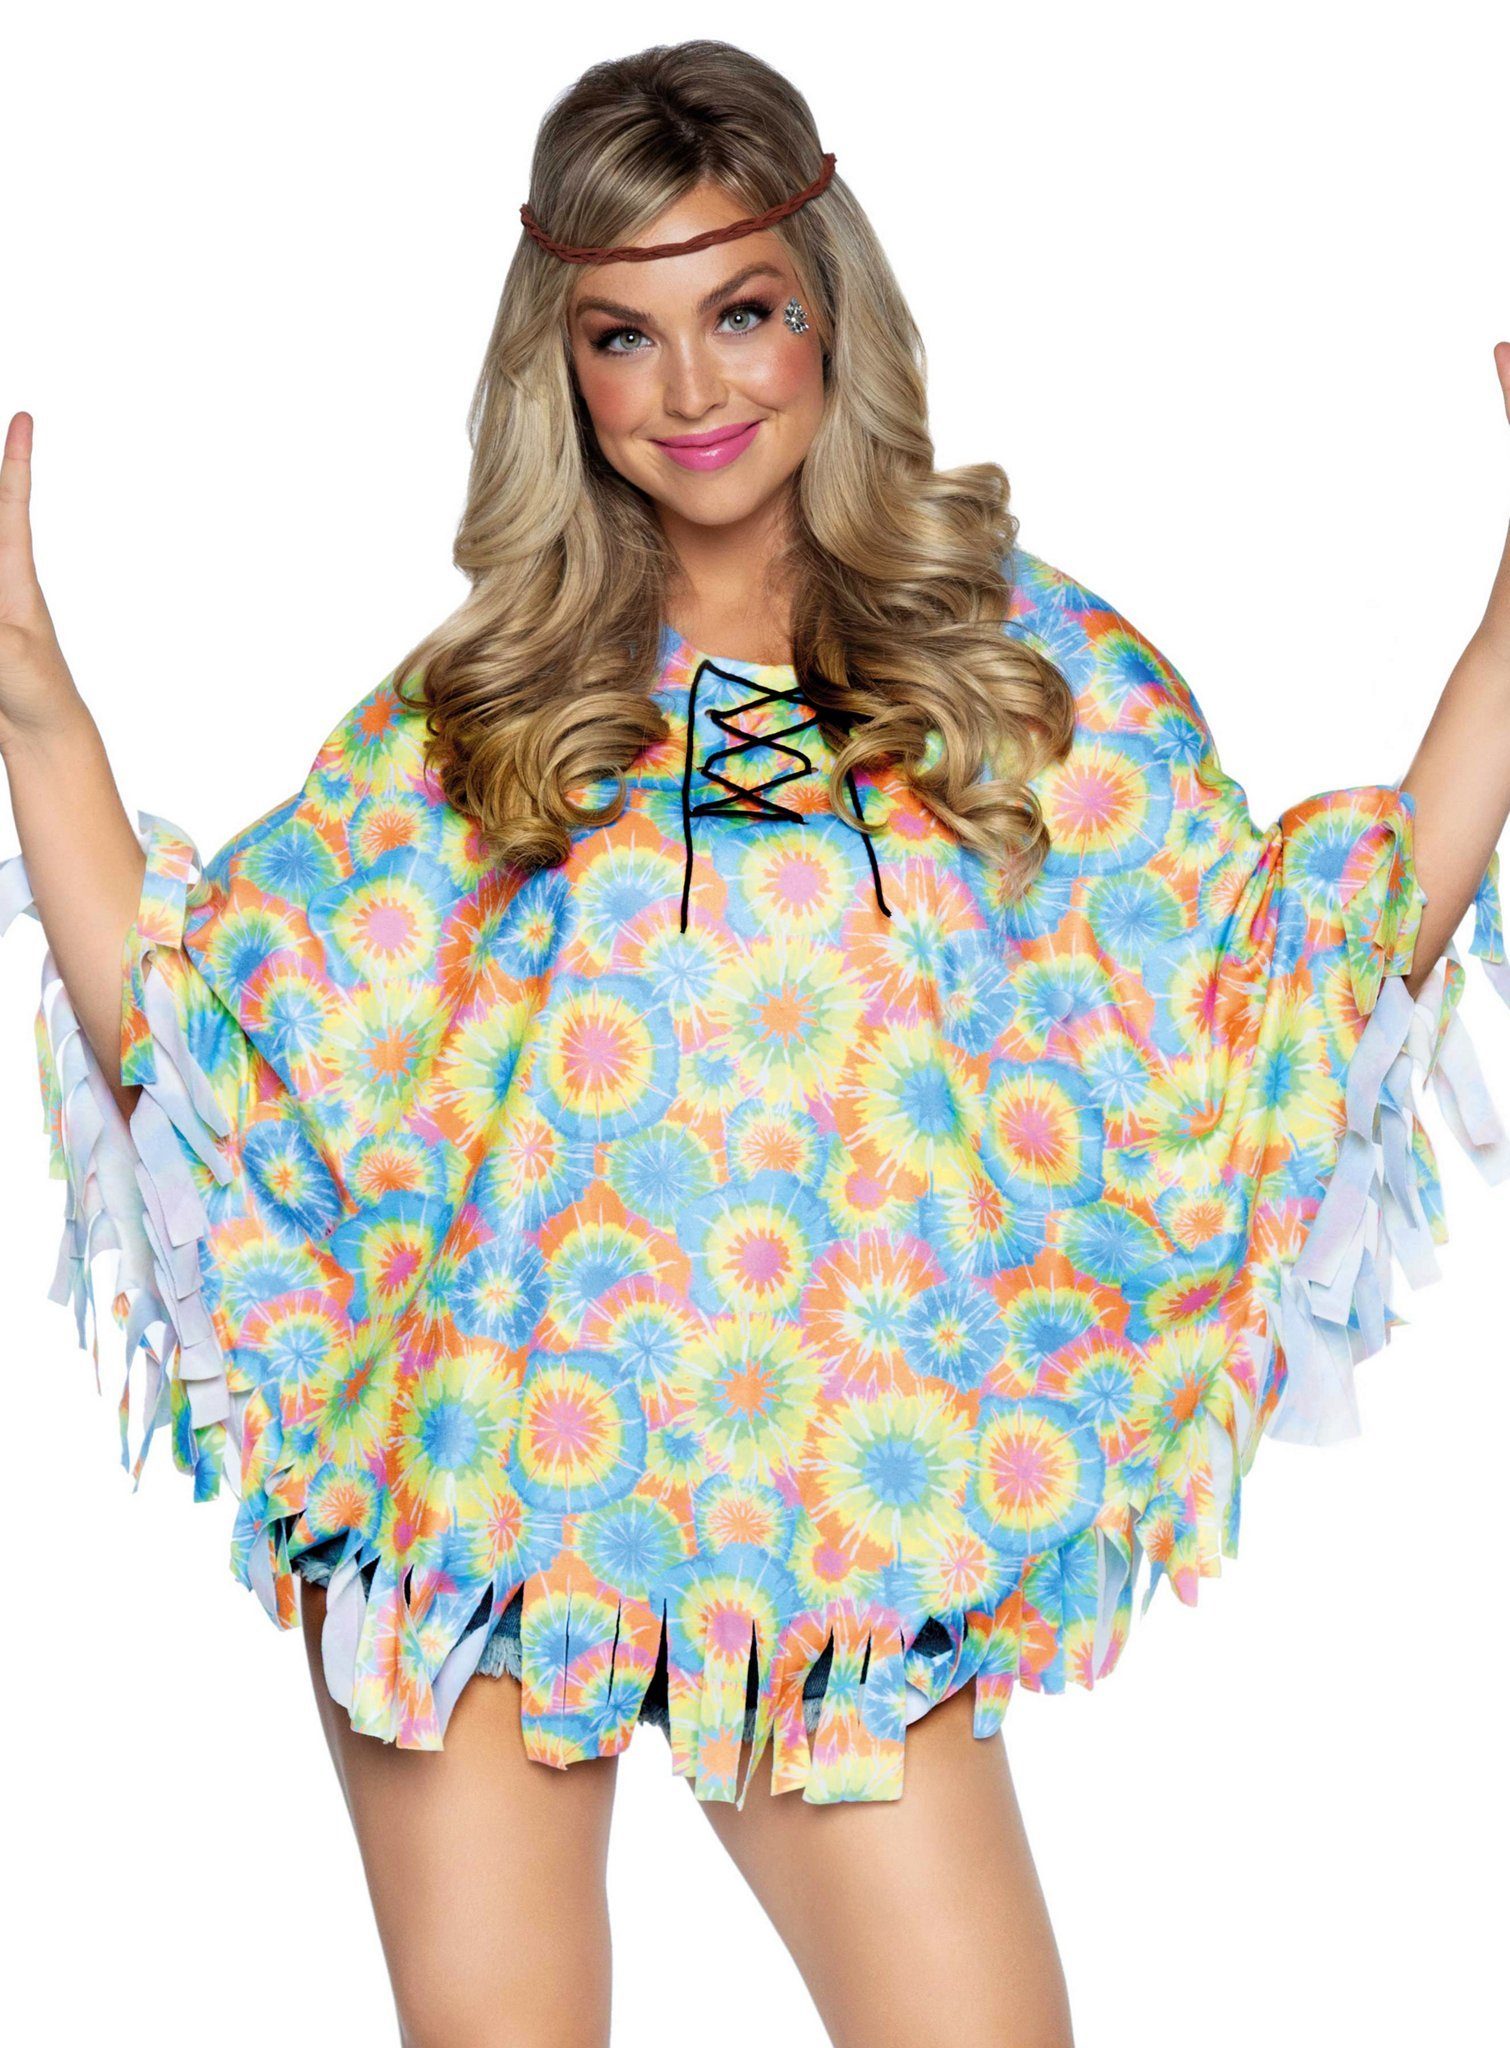 Leg Avenue Kostüm Hippie Poncho, Einfach schnell verkleiden mit diesem Flowerpower-Überwurf!